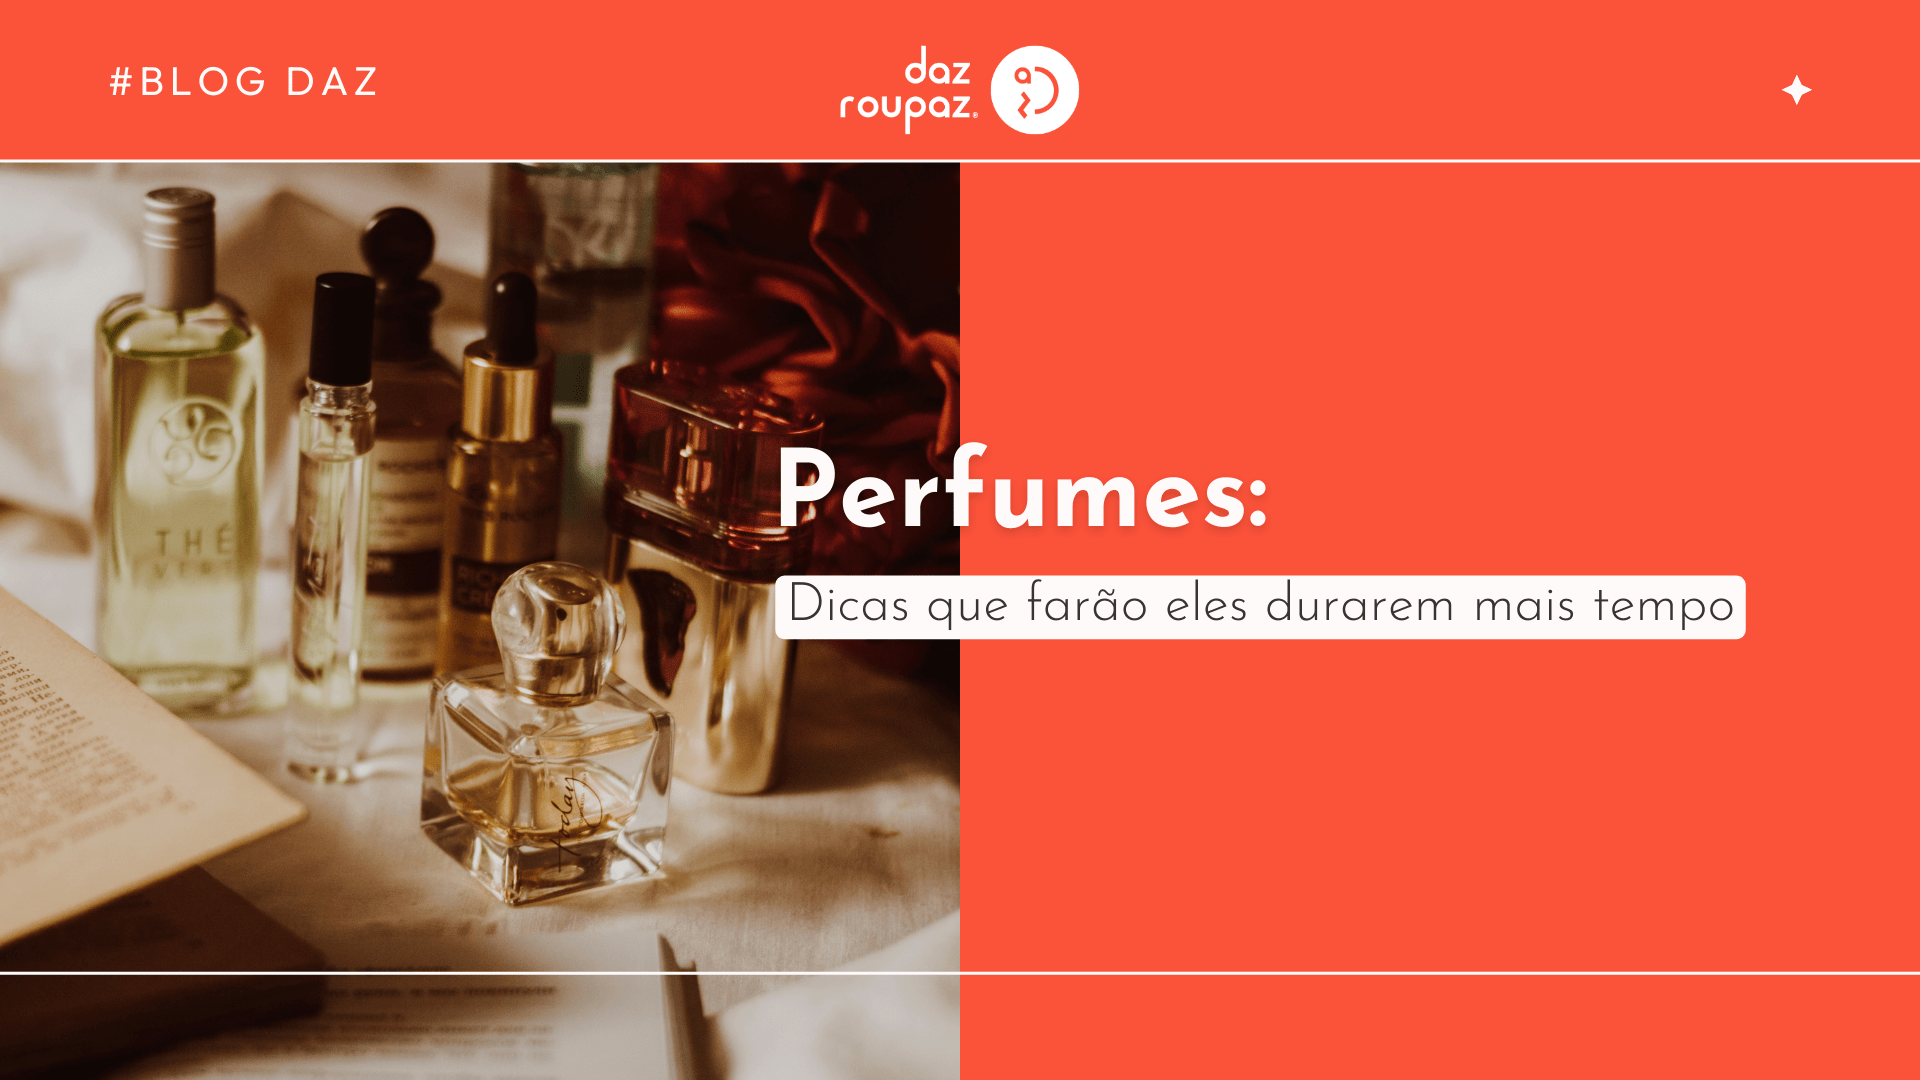 Descubra dicas essenciais para fazer o seu perfume durar mais tempo e aproveitar ao máximo sua fragrância favorita.